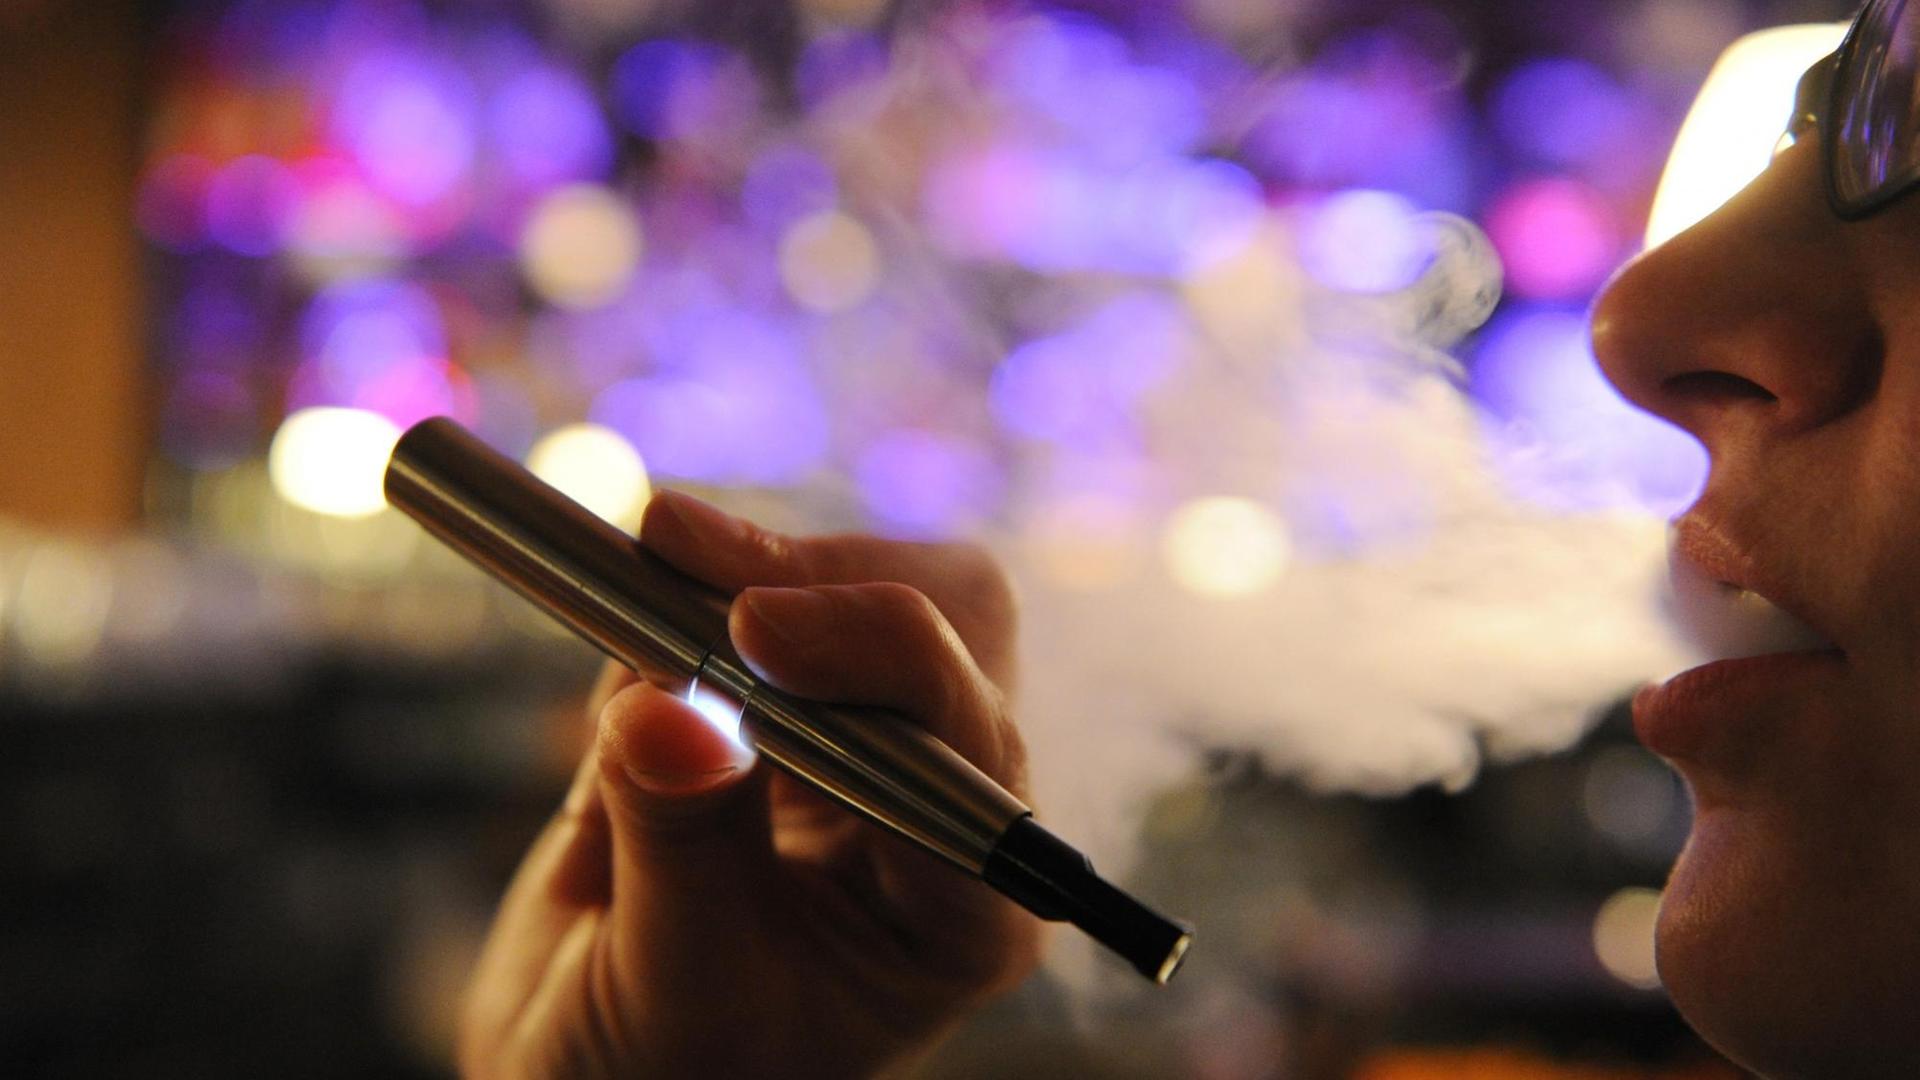 Eine Frau raucht in Hamburg eine elektrische Zigarette. Die elektronische Zigarette wird als "gesunde Alternative" zum Rauchen gehandelt, da sie keinen Tabak verbrennt. Kritiker warnen aber davor, die Auswirkungen des E-Glimmstängels zu unterschätzen.